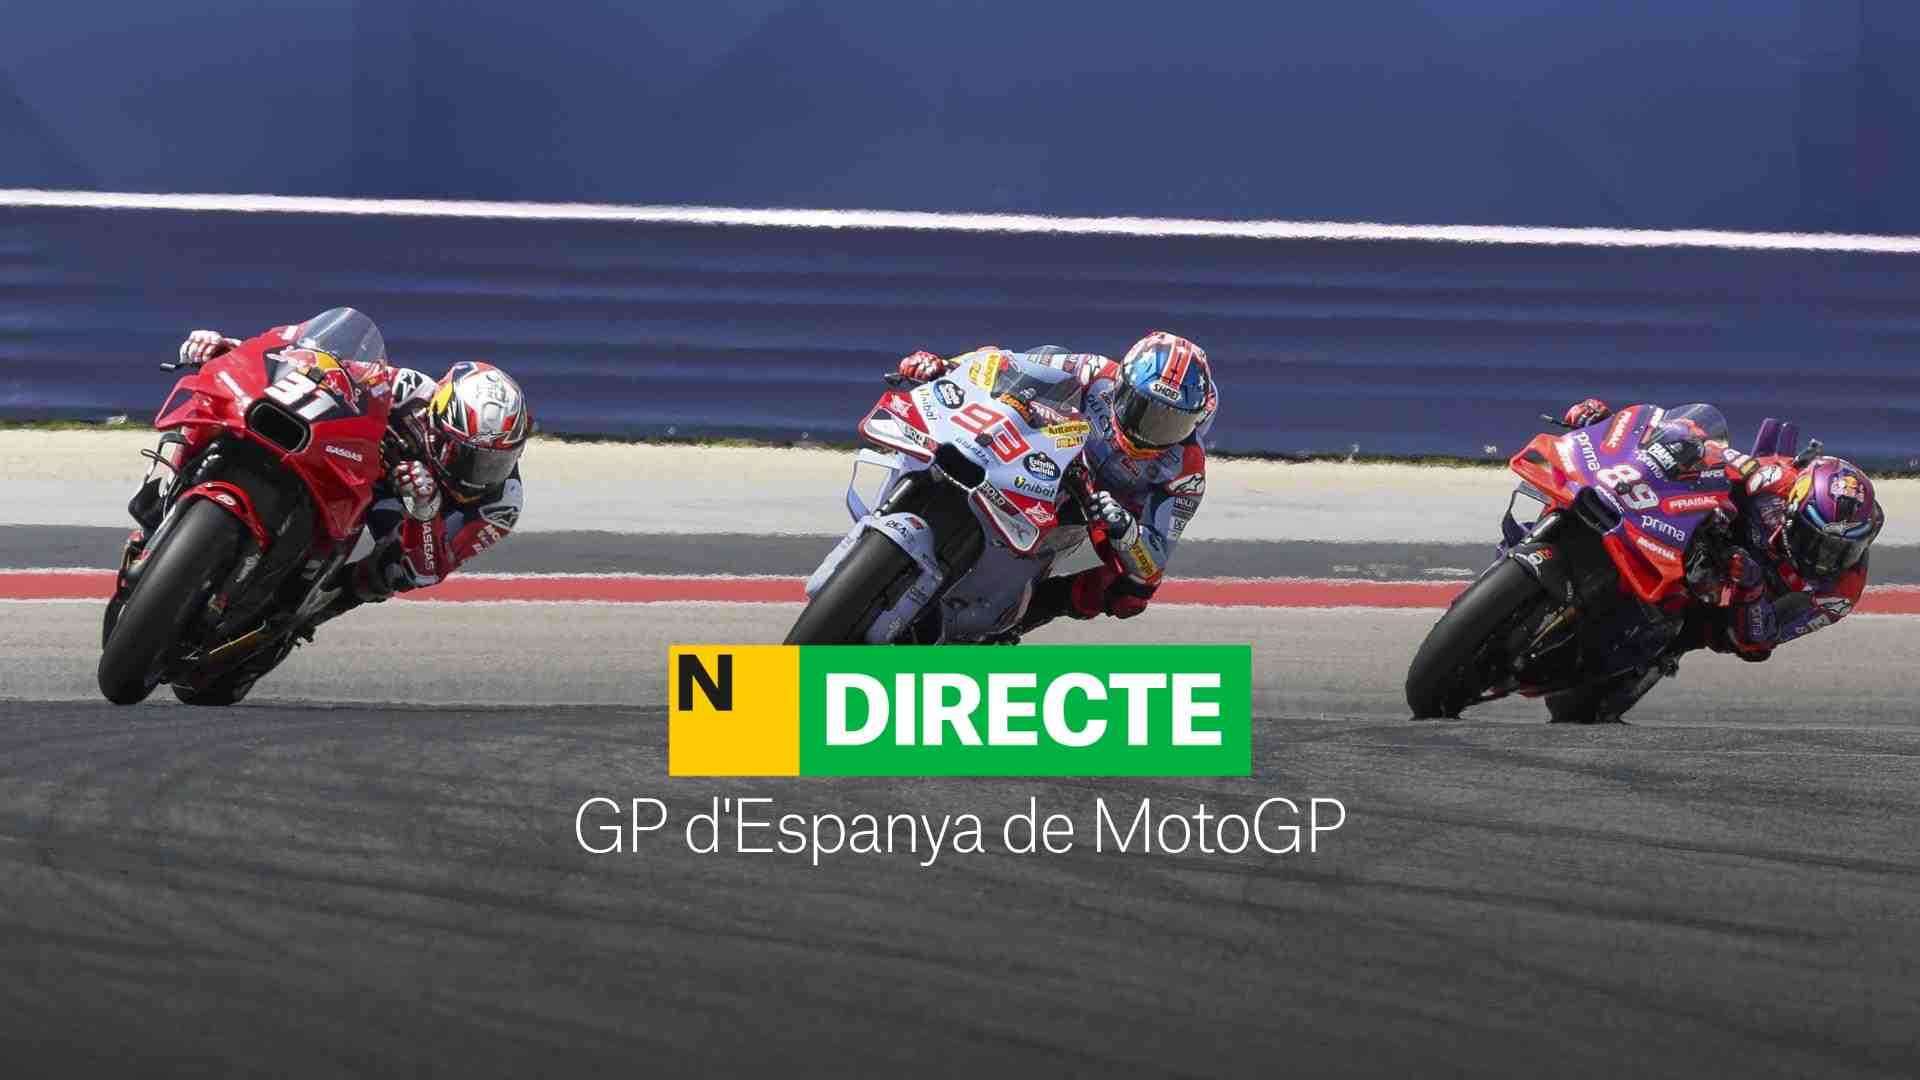 GP d'Espanya de MotoGP, DIRECTE | Resultat i resum